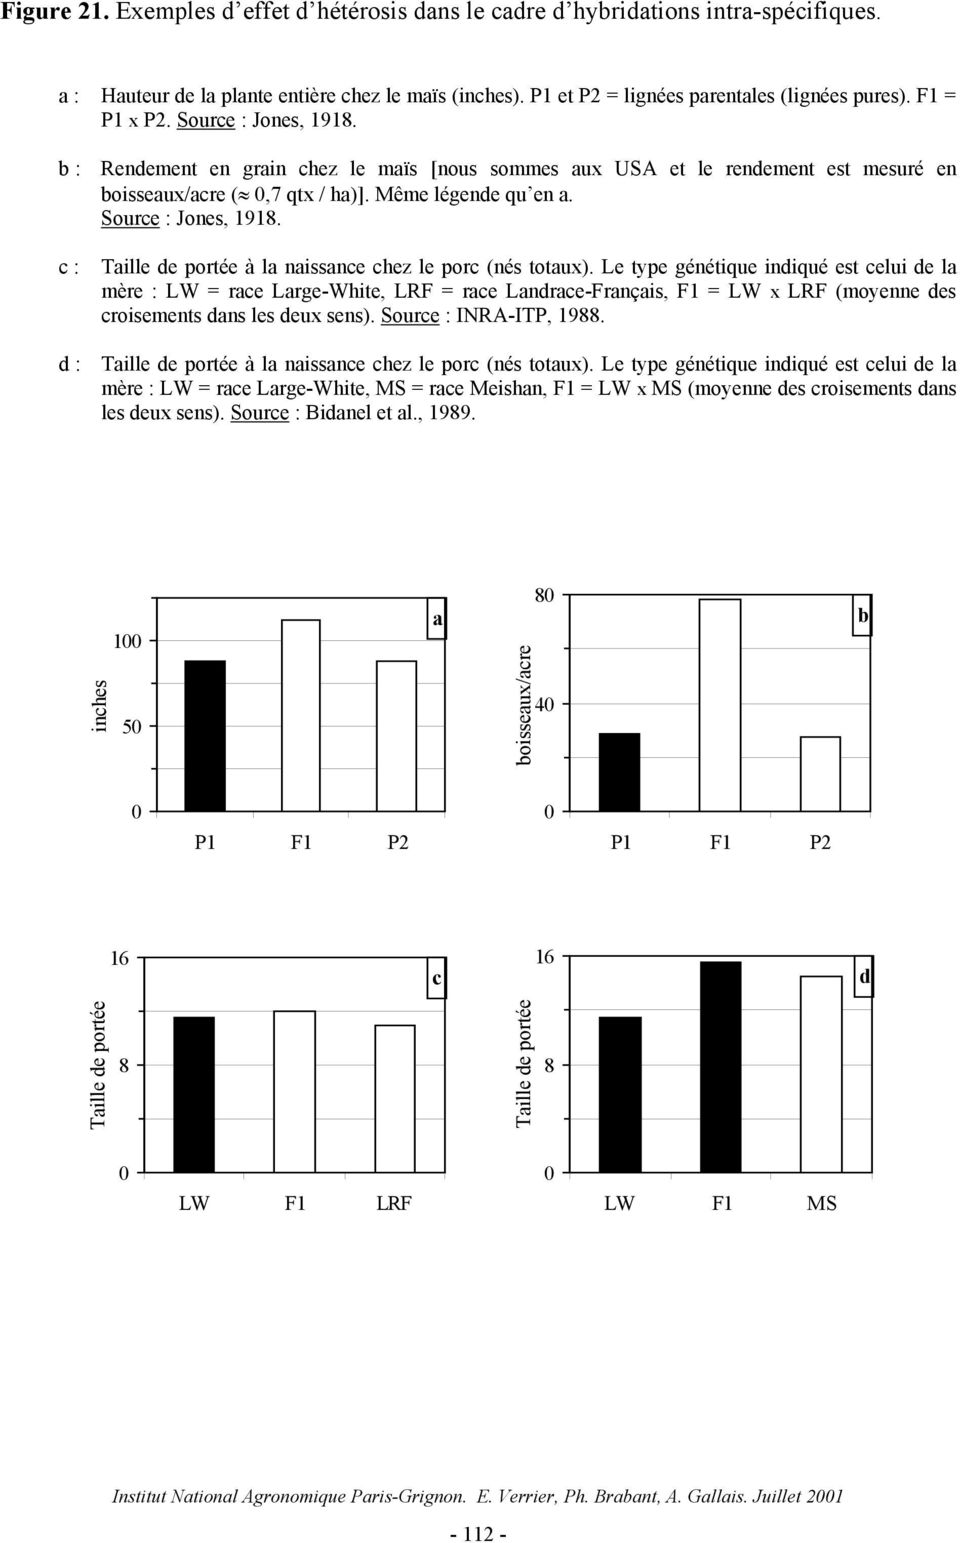 Le type génétique indiqué est celui de la mère : LW = race Large-White, LRF = race Landrace-Français, F1 = LW x LRF (moyenne des croisements dans les deux sens). Source : INRA-ITP, 1988.